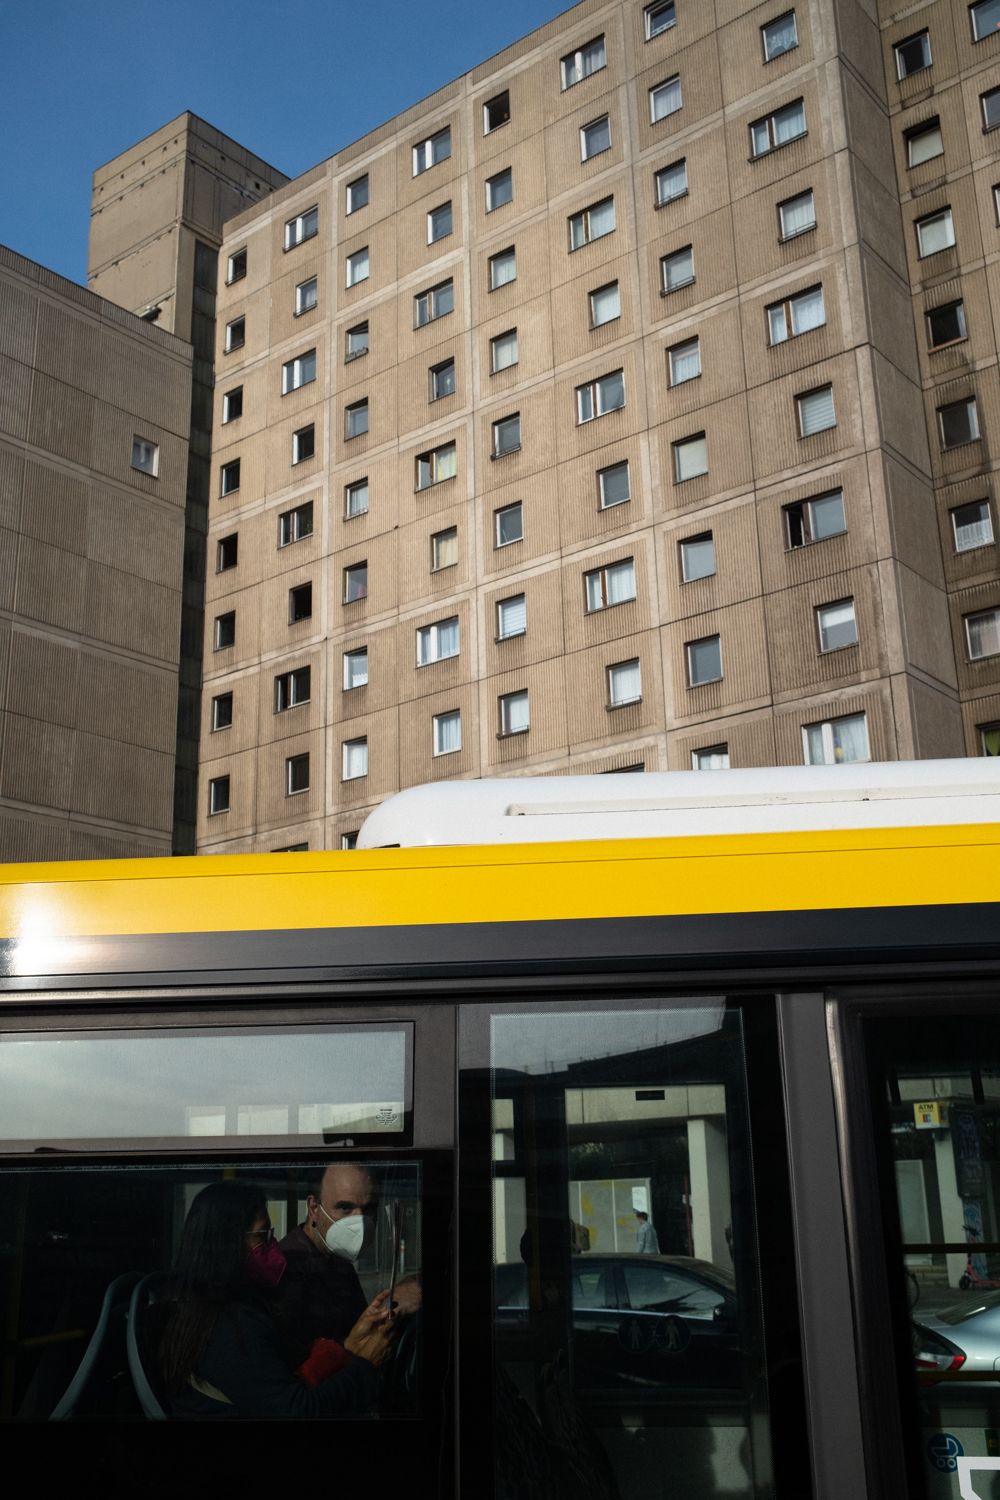 Bus am Alexanderplatz in Berlin Mitte. Ein Mann schaut aus dem Fenster. Er trägt wegen der Corona Pandemie eine Maske.